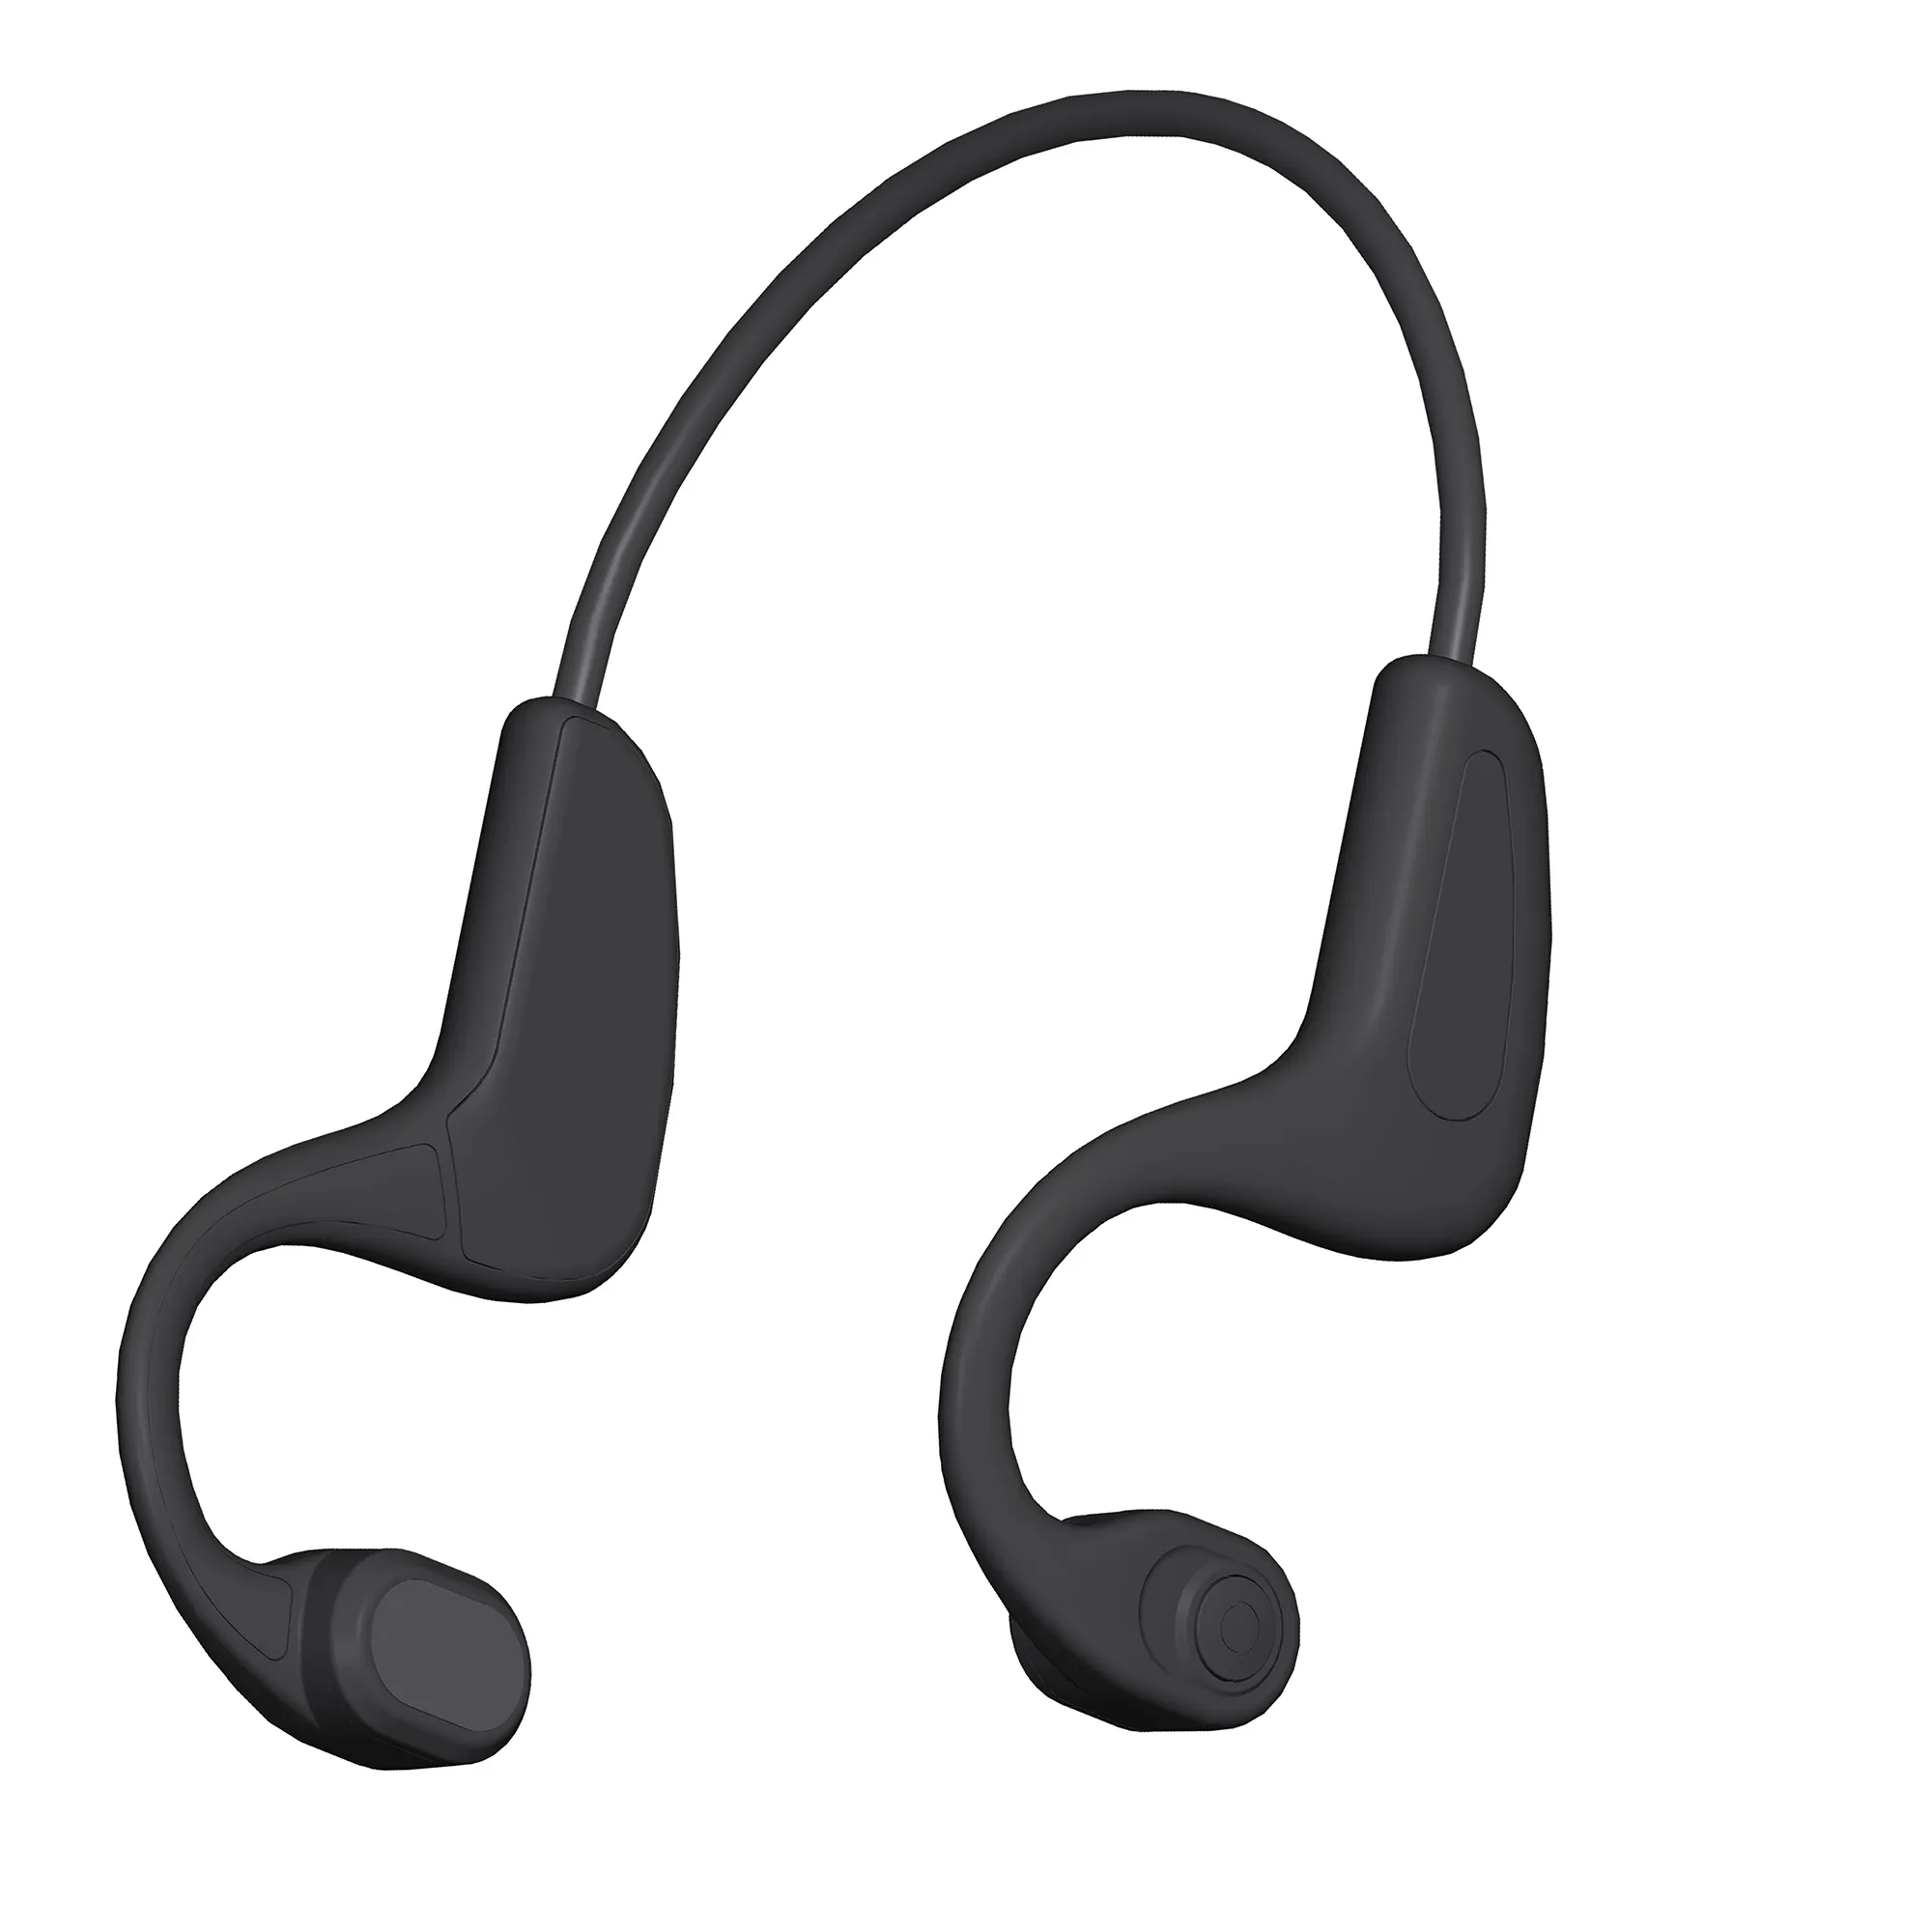 หูฟังไร้สายนํากระดูก การได้ยินเสื่อม ชุดหูฟังกีฬาแบบเปิดหูที่ใช้หูฟัง